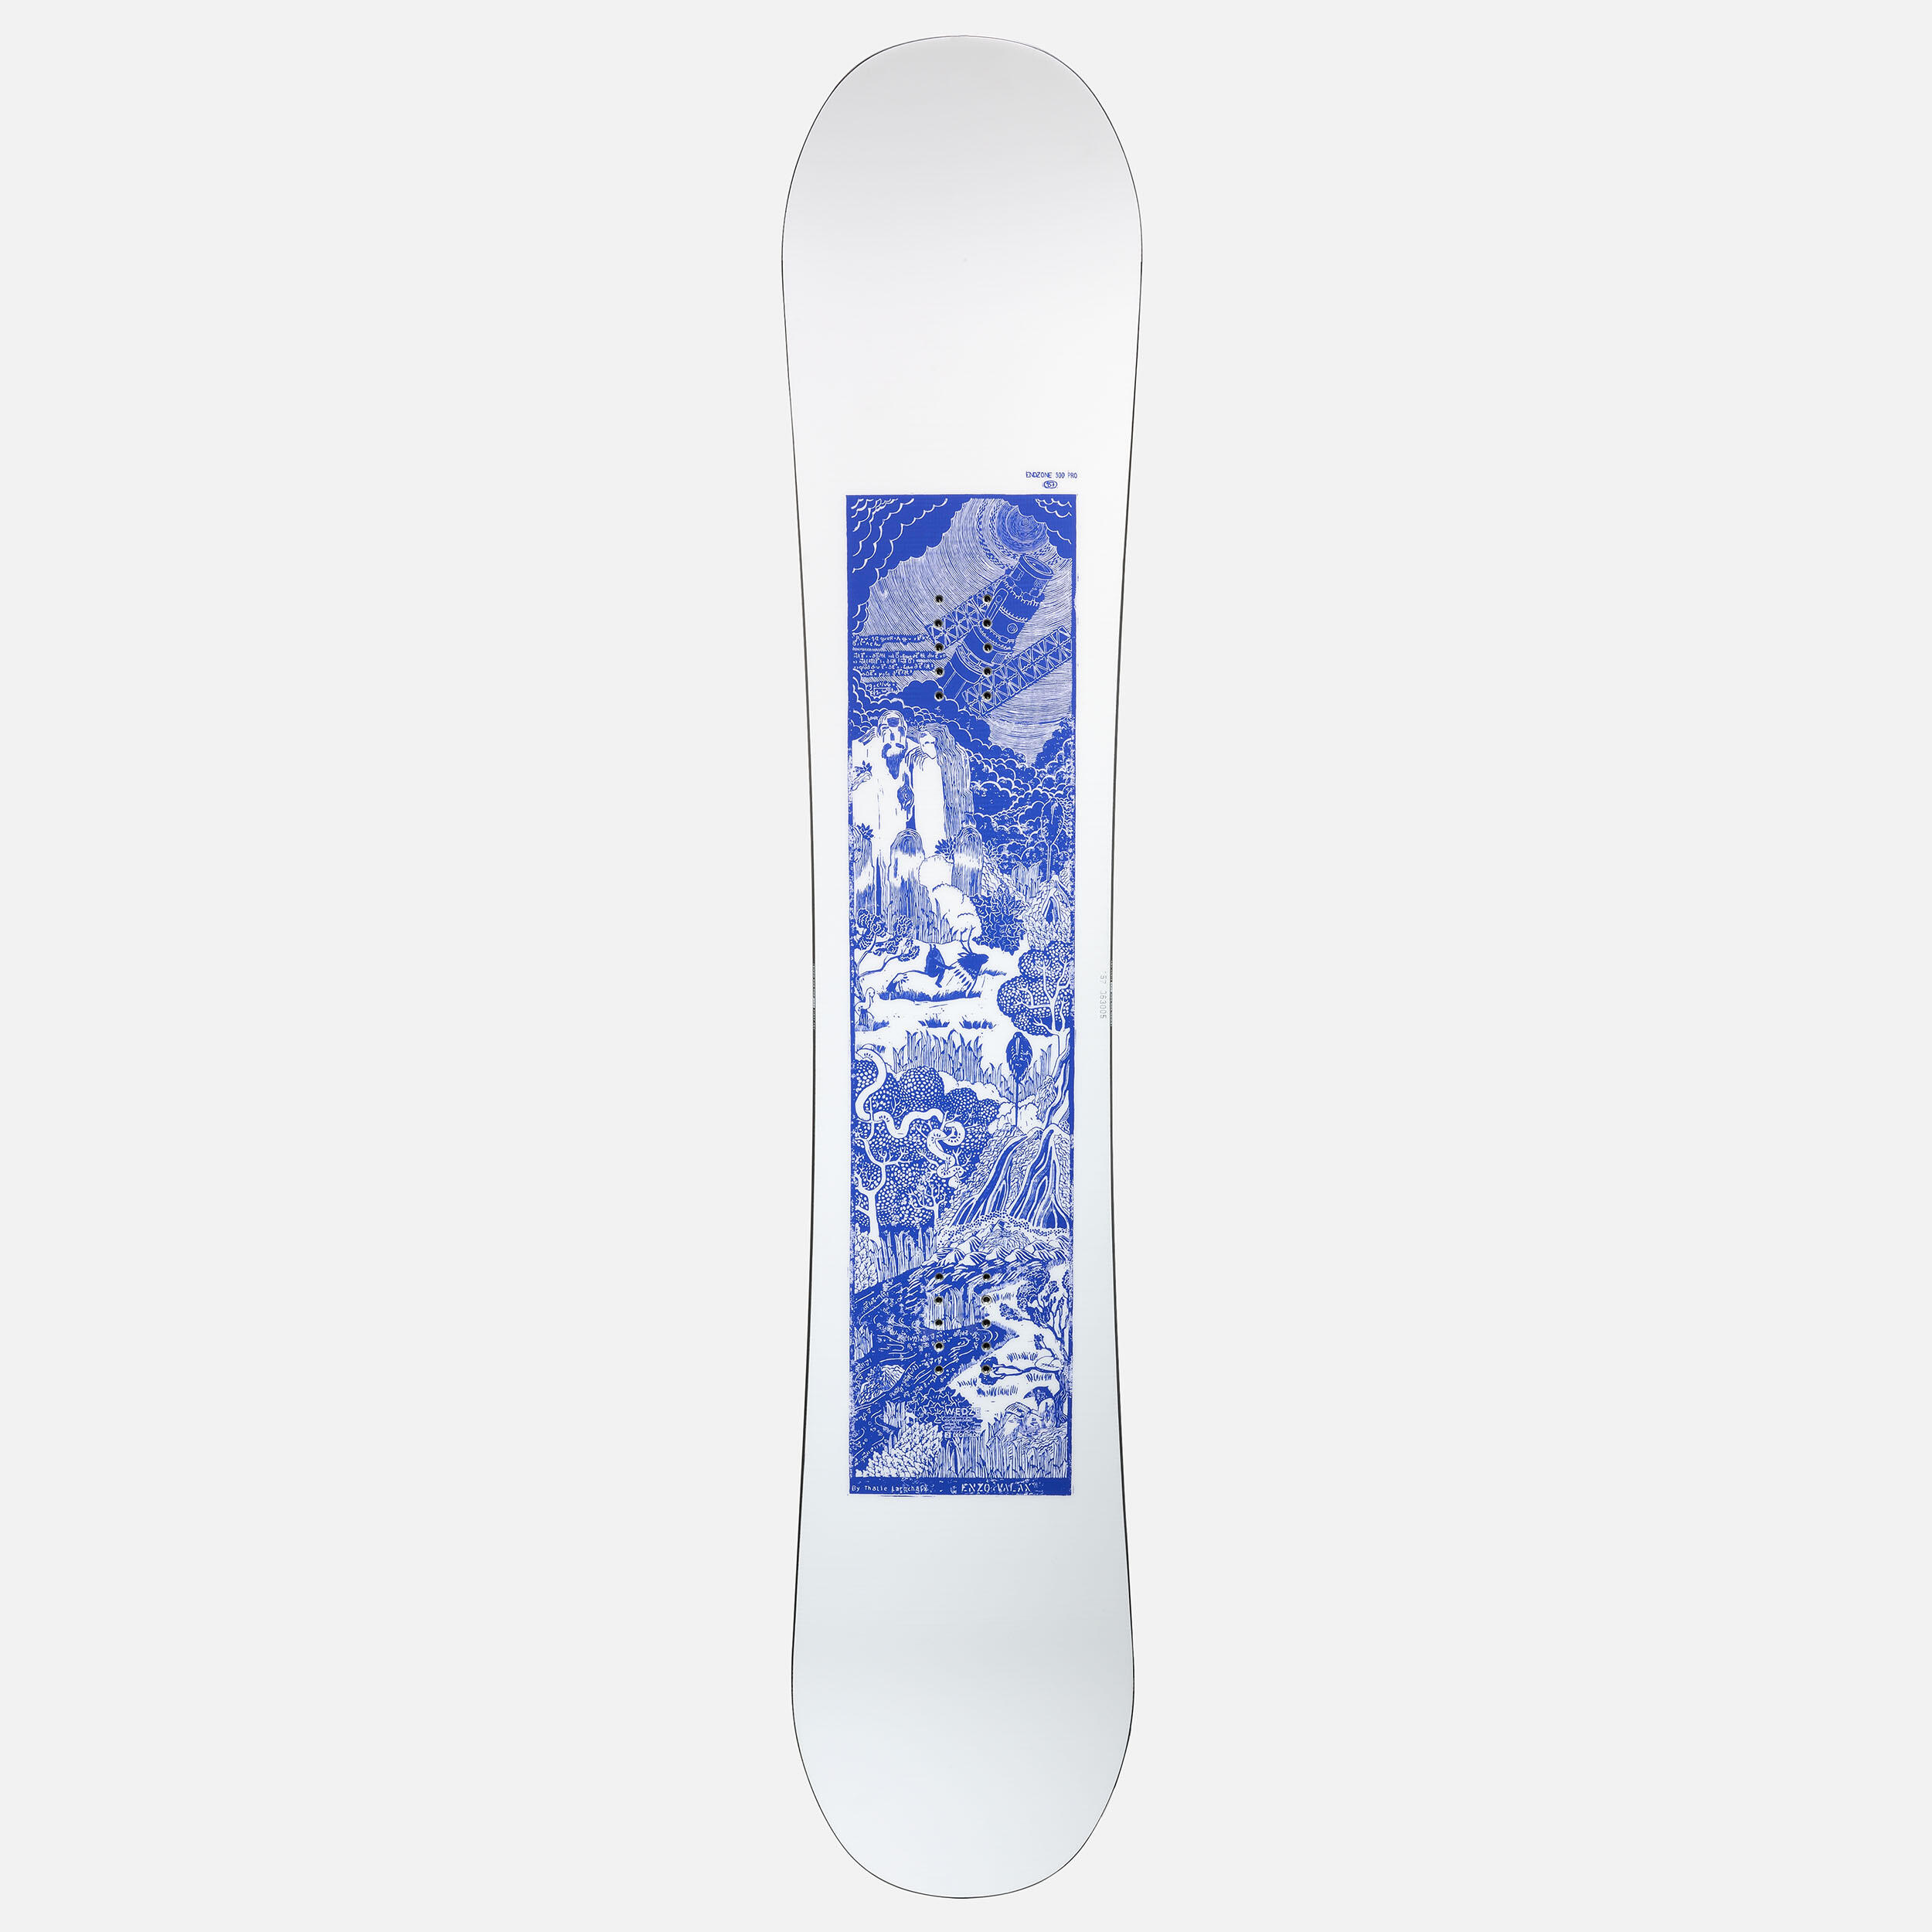 Freestyle snowboard – Endzone 900 PRO – Enzo Valax 5/14